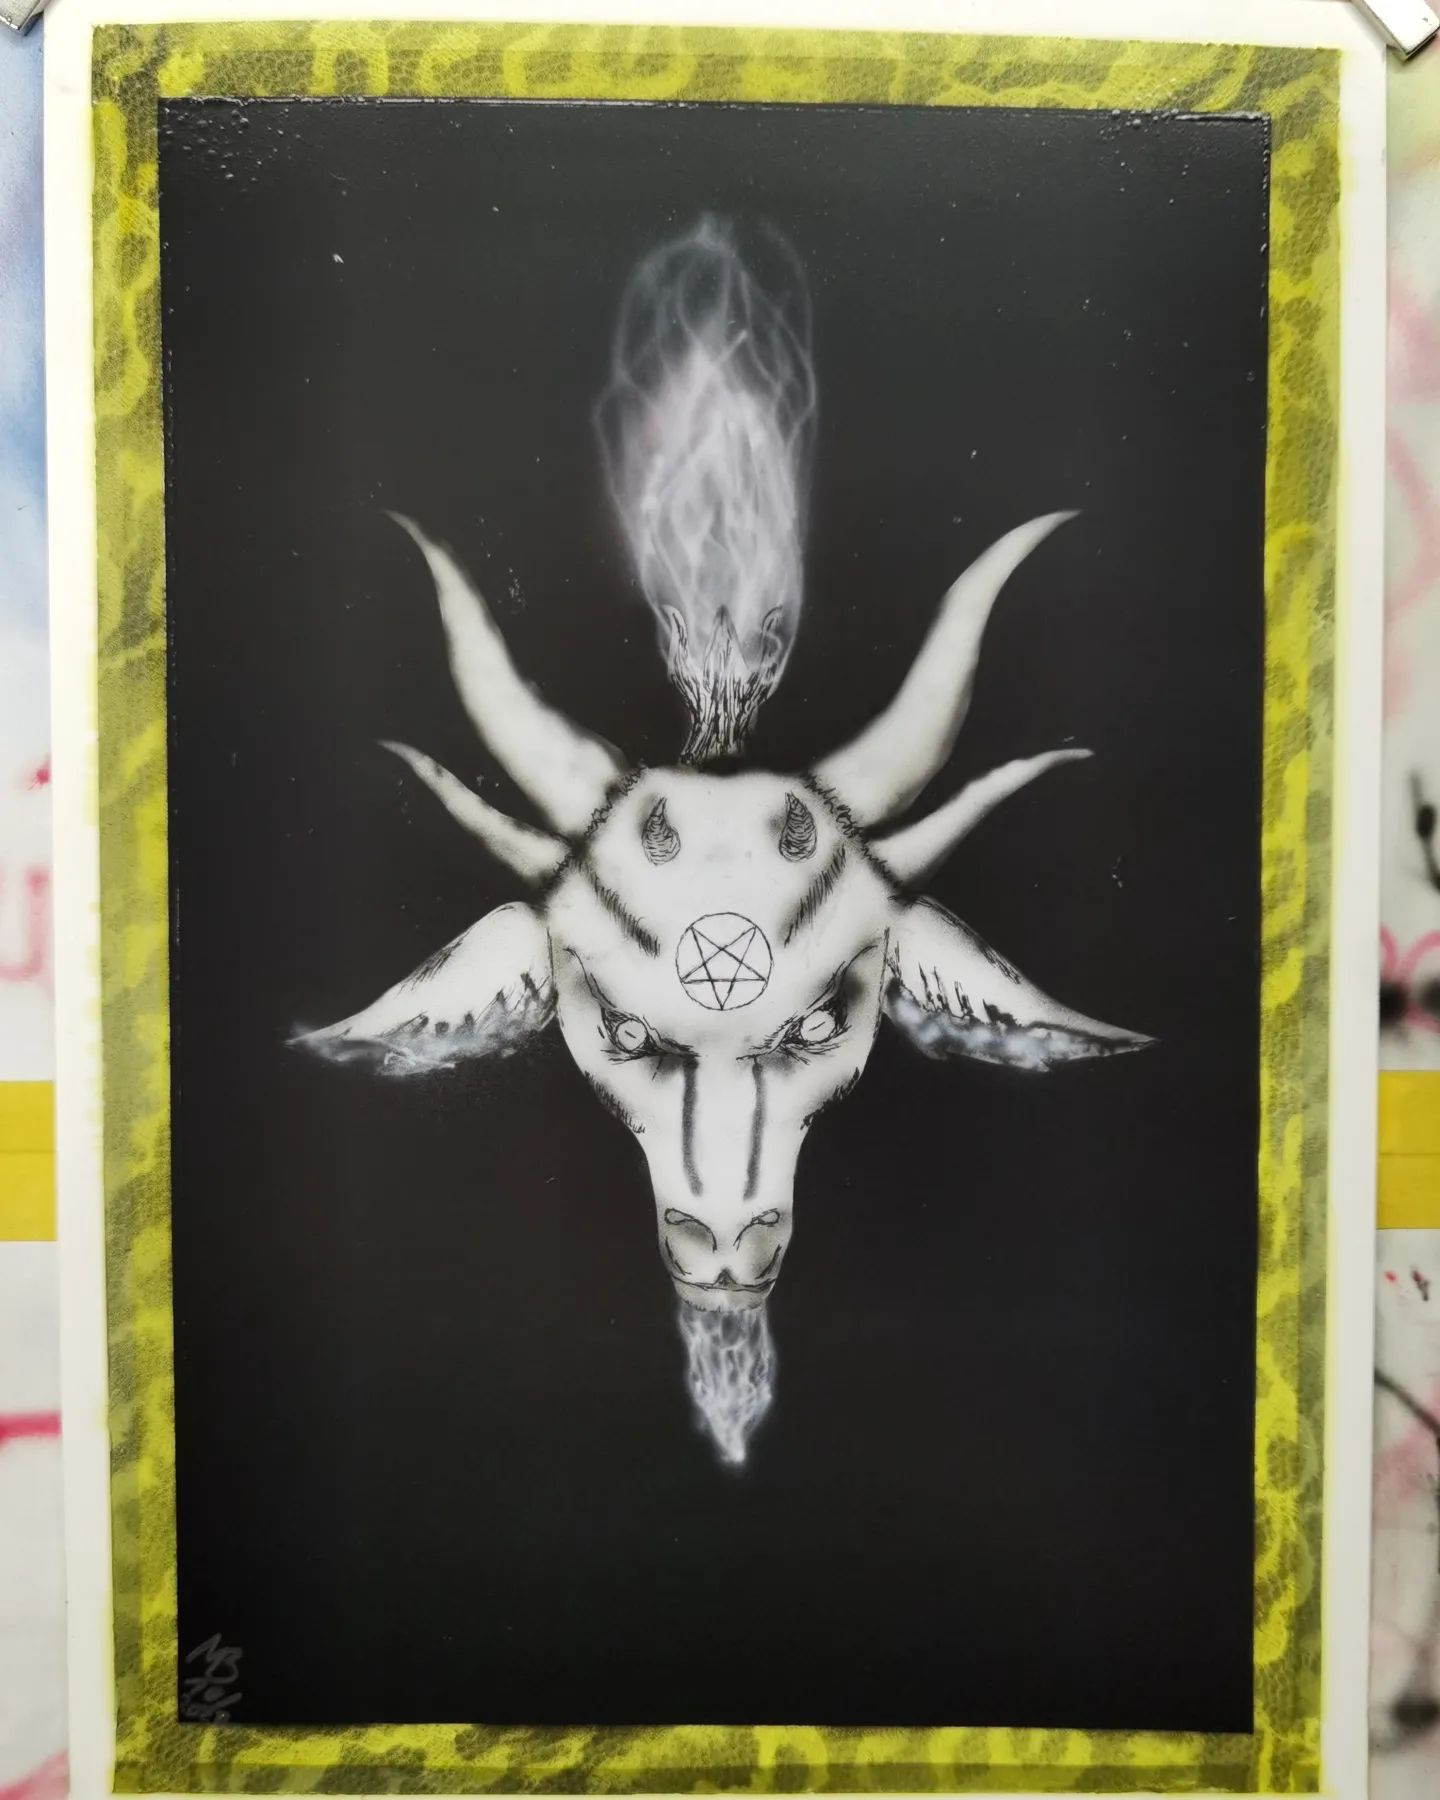 Baphomet. Airbrush und Tuscheliner auf Synthetikpapier. Noch nicht perfekt, aber man lernt stetig dazu.  #baphomet #666 #satanism #art #airbrush #airbrushpainting #painting #createx #vallejo #hardersteenbeck #airbush4you #herterich #occultism